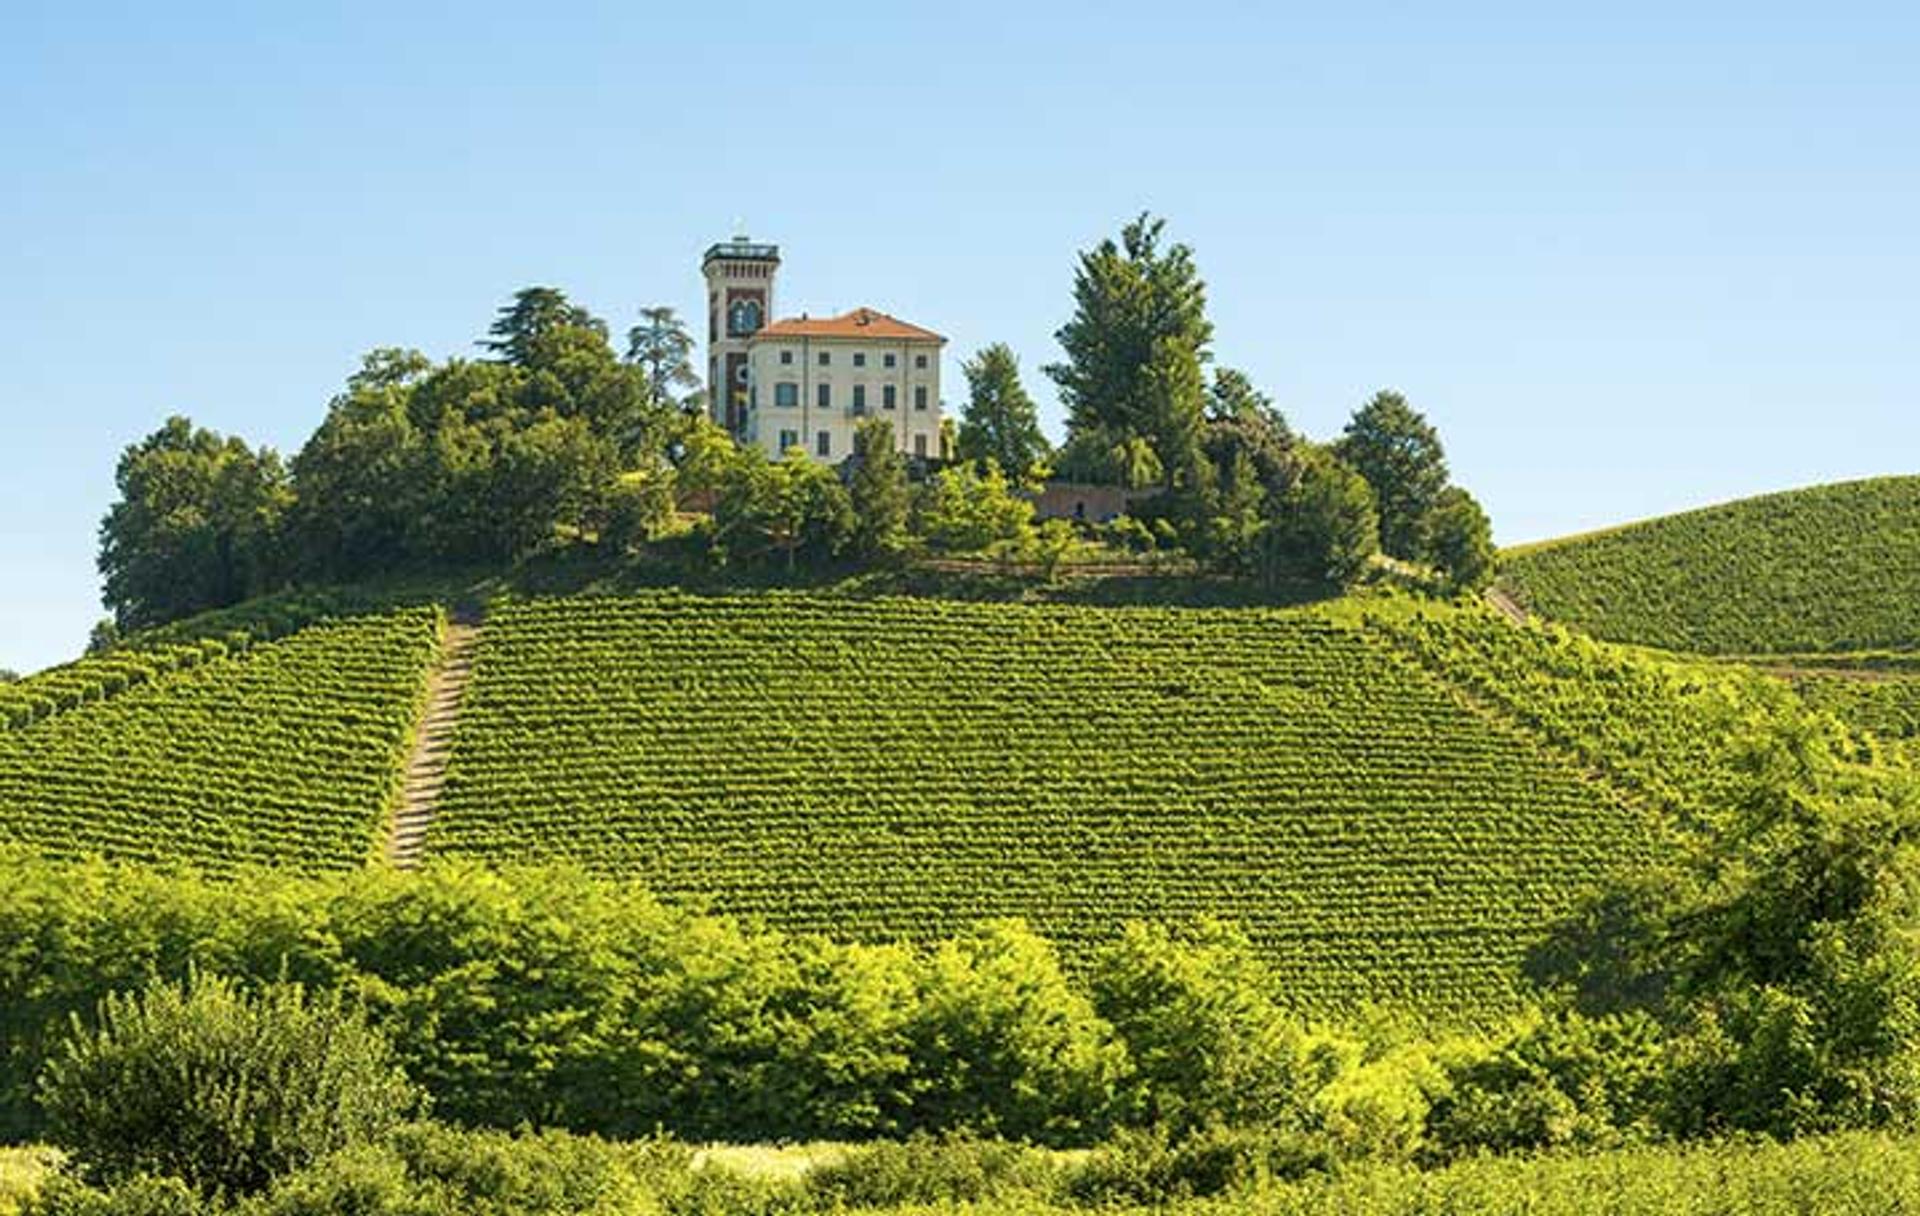 Vinho Verde, Barolo, Rioja... Tous les vins à découvrir pendant vos vacances